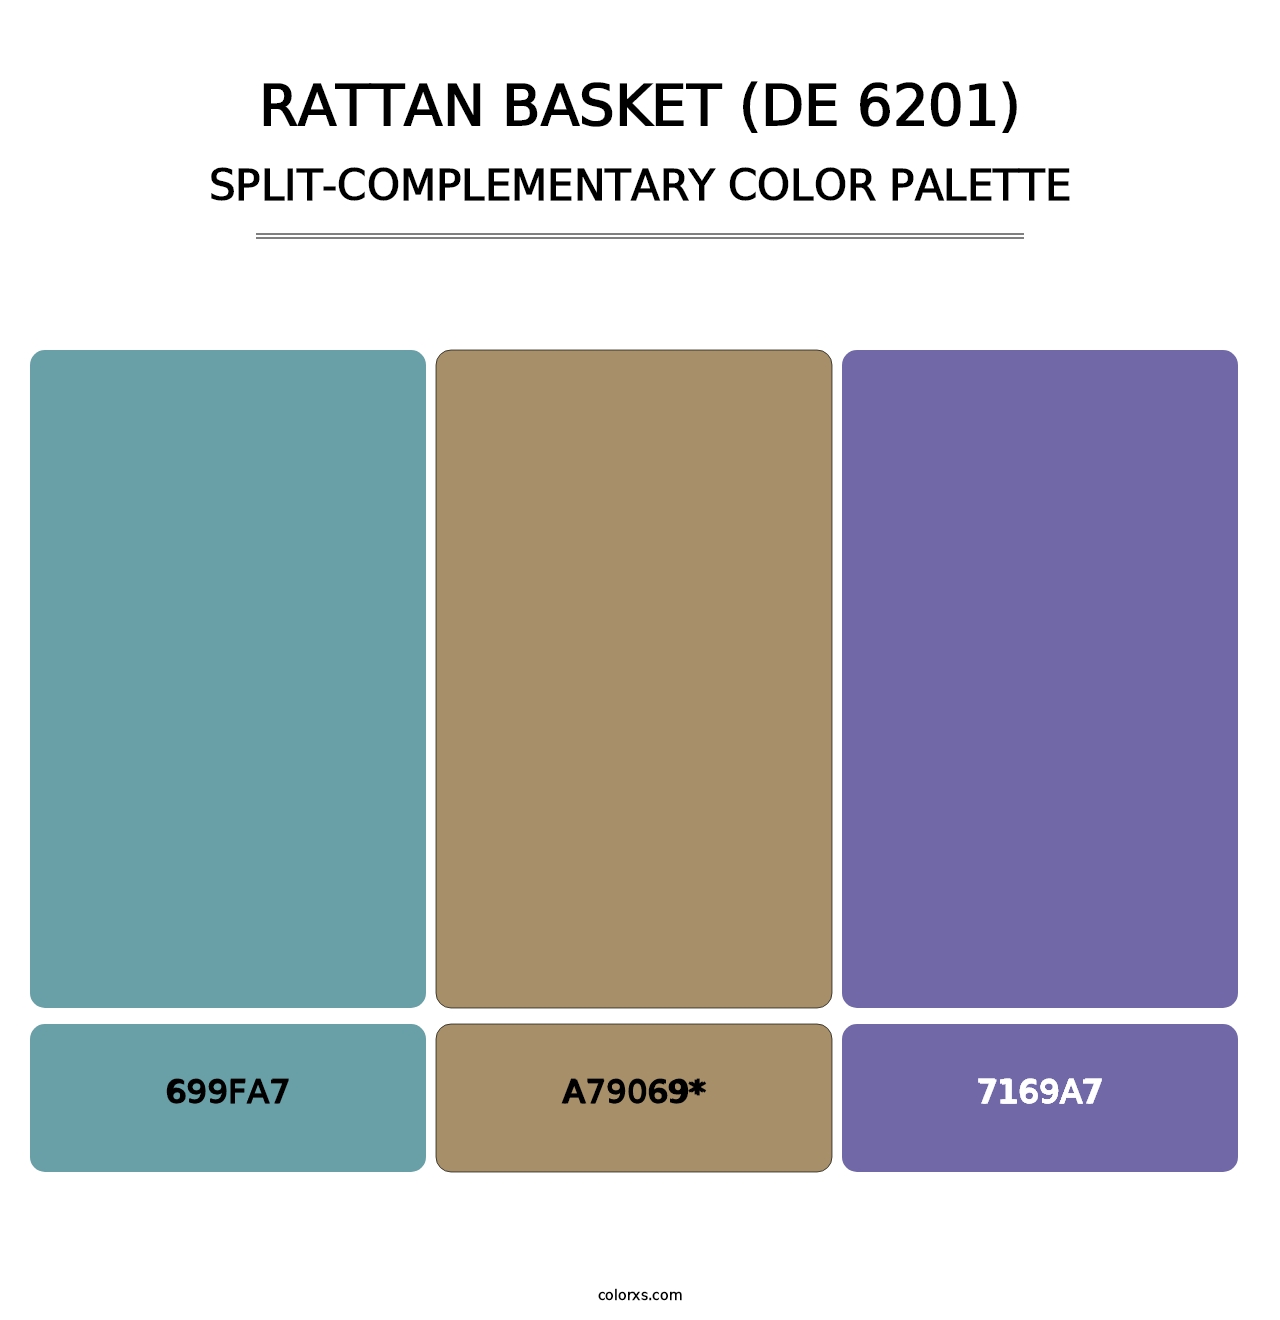 Rattan Basket (DE 6201) - Split-Complementary Color Palette